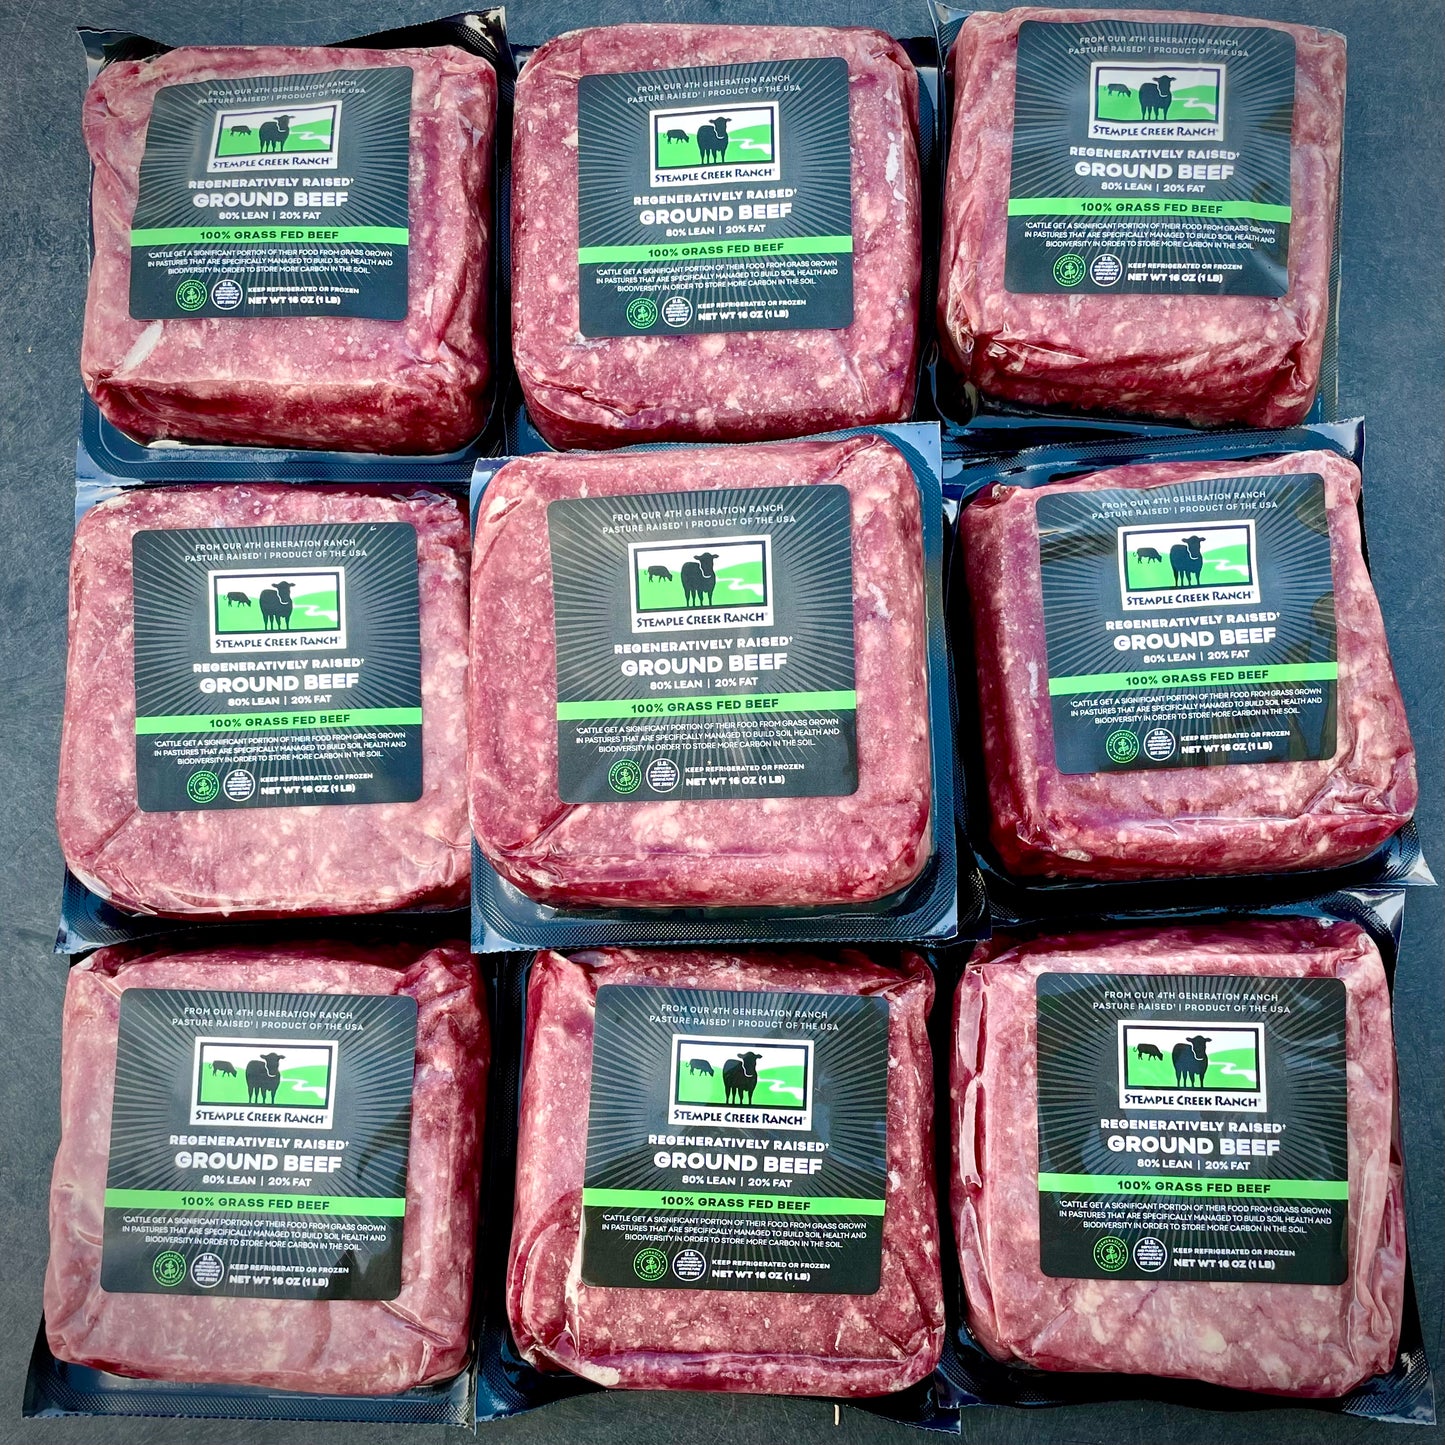 Bulk Meat Delivery Service  Buy Bulk Meat & Steak Online